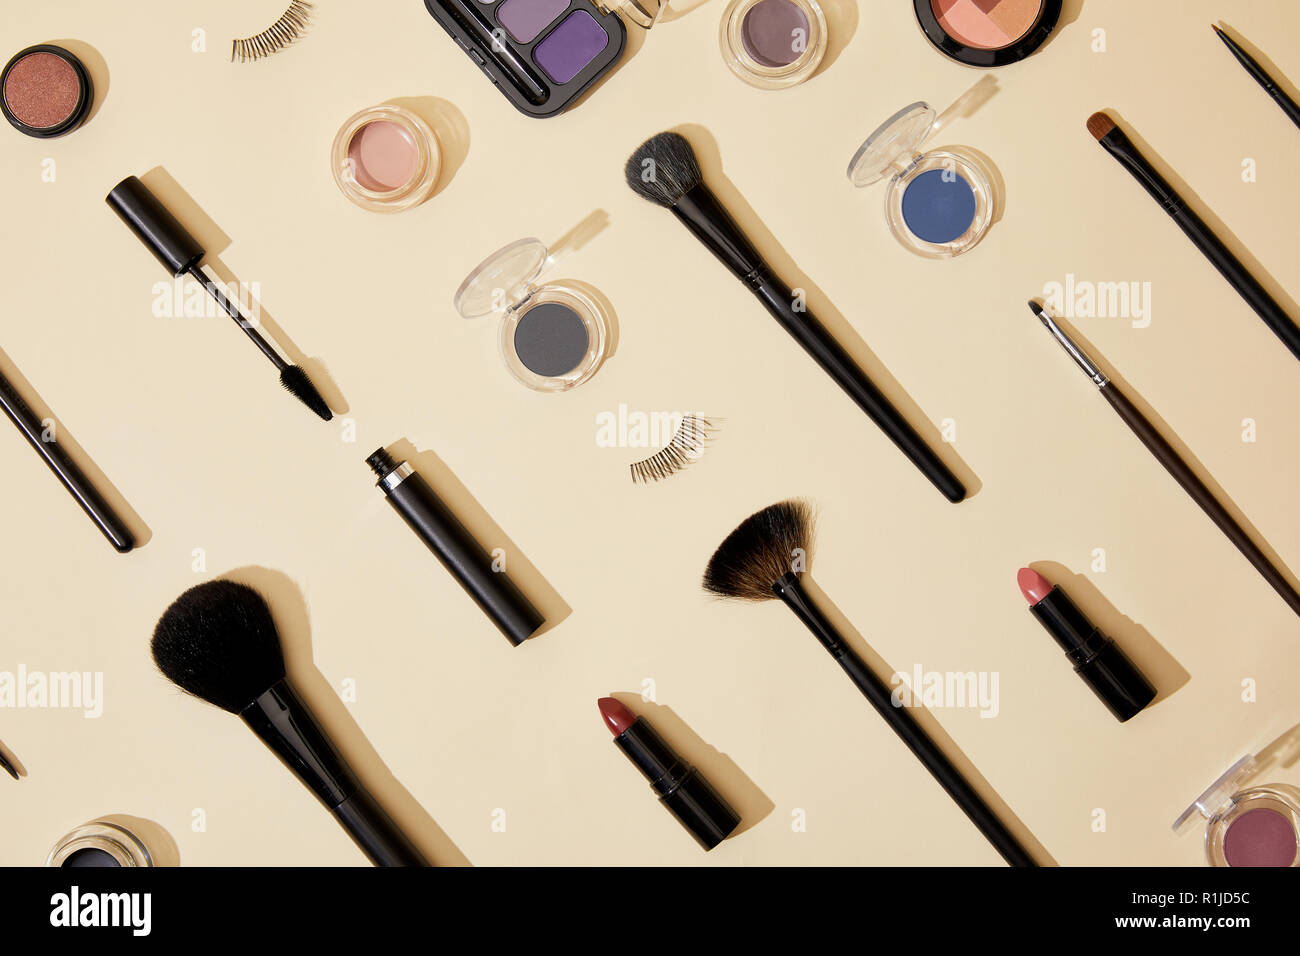 Vista superiore della composizione di diversi prodotti cosmetici giacente sulla superficie di colore beige Foto Stock